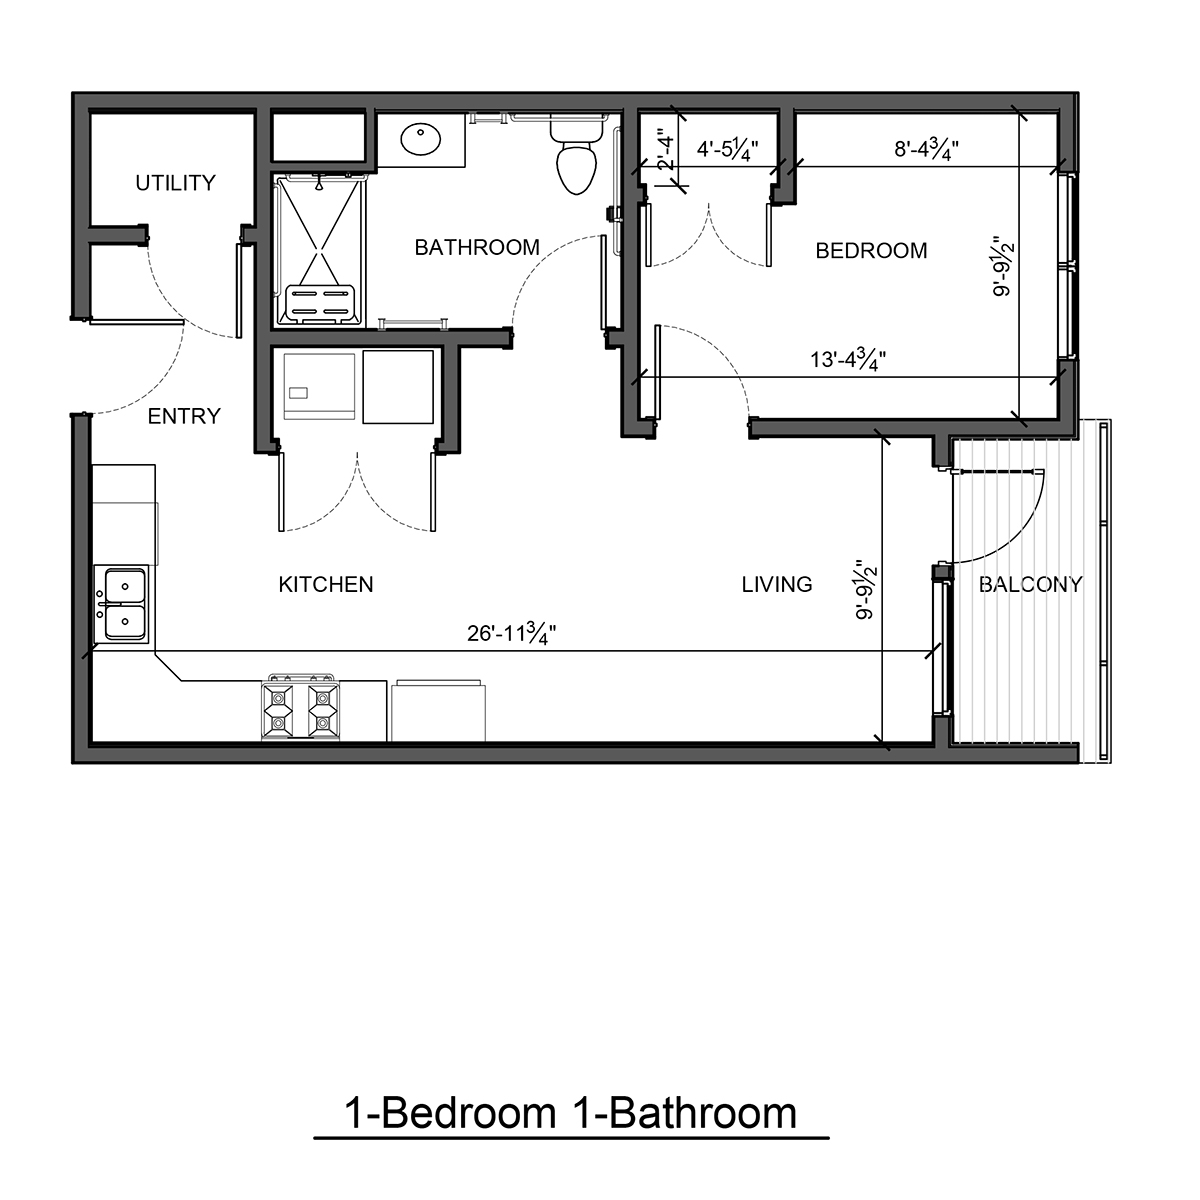 Bedroom Floor Plan With Measurements | Homeminimalisite.com